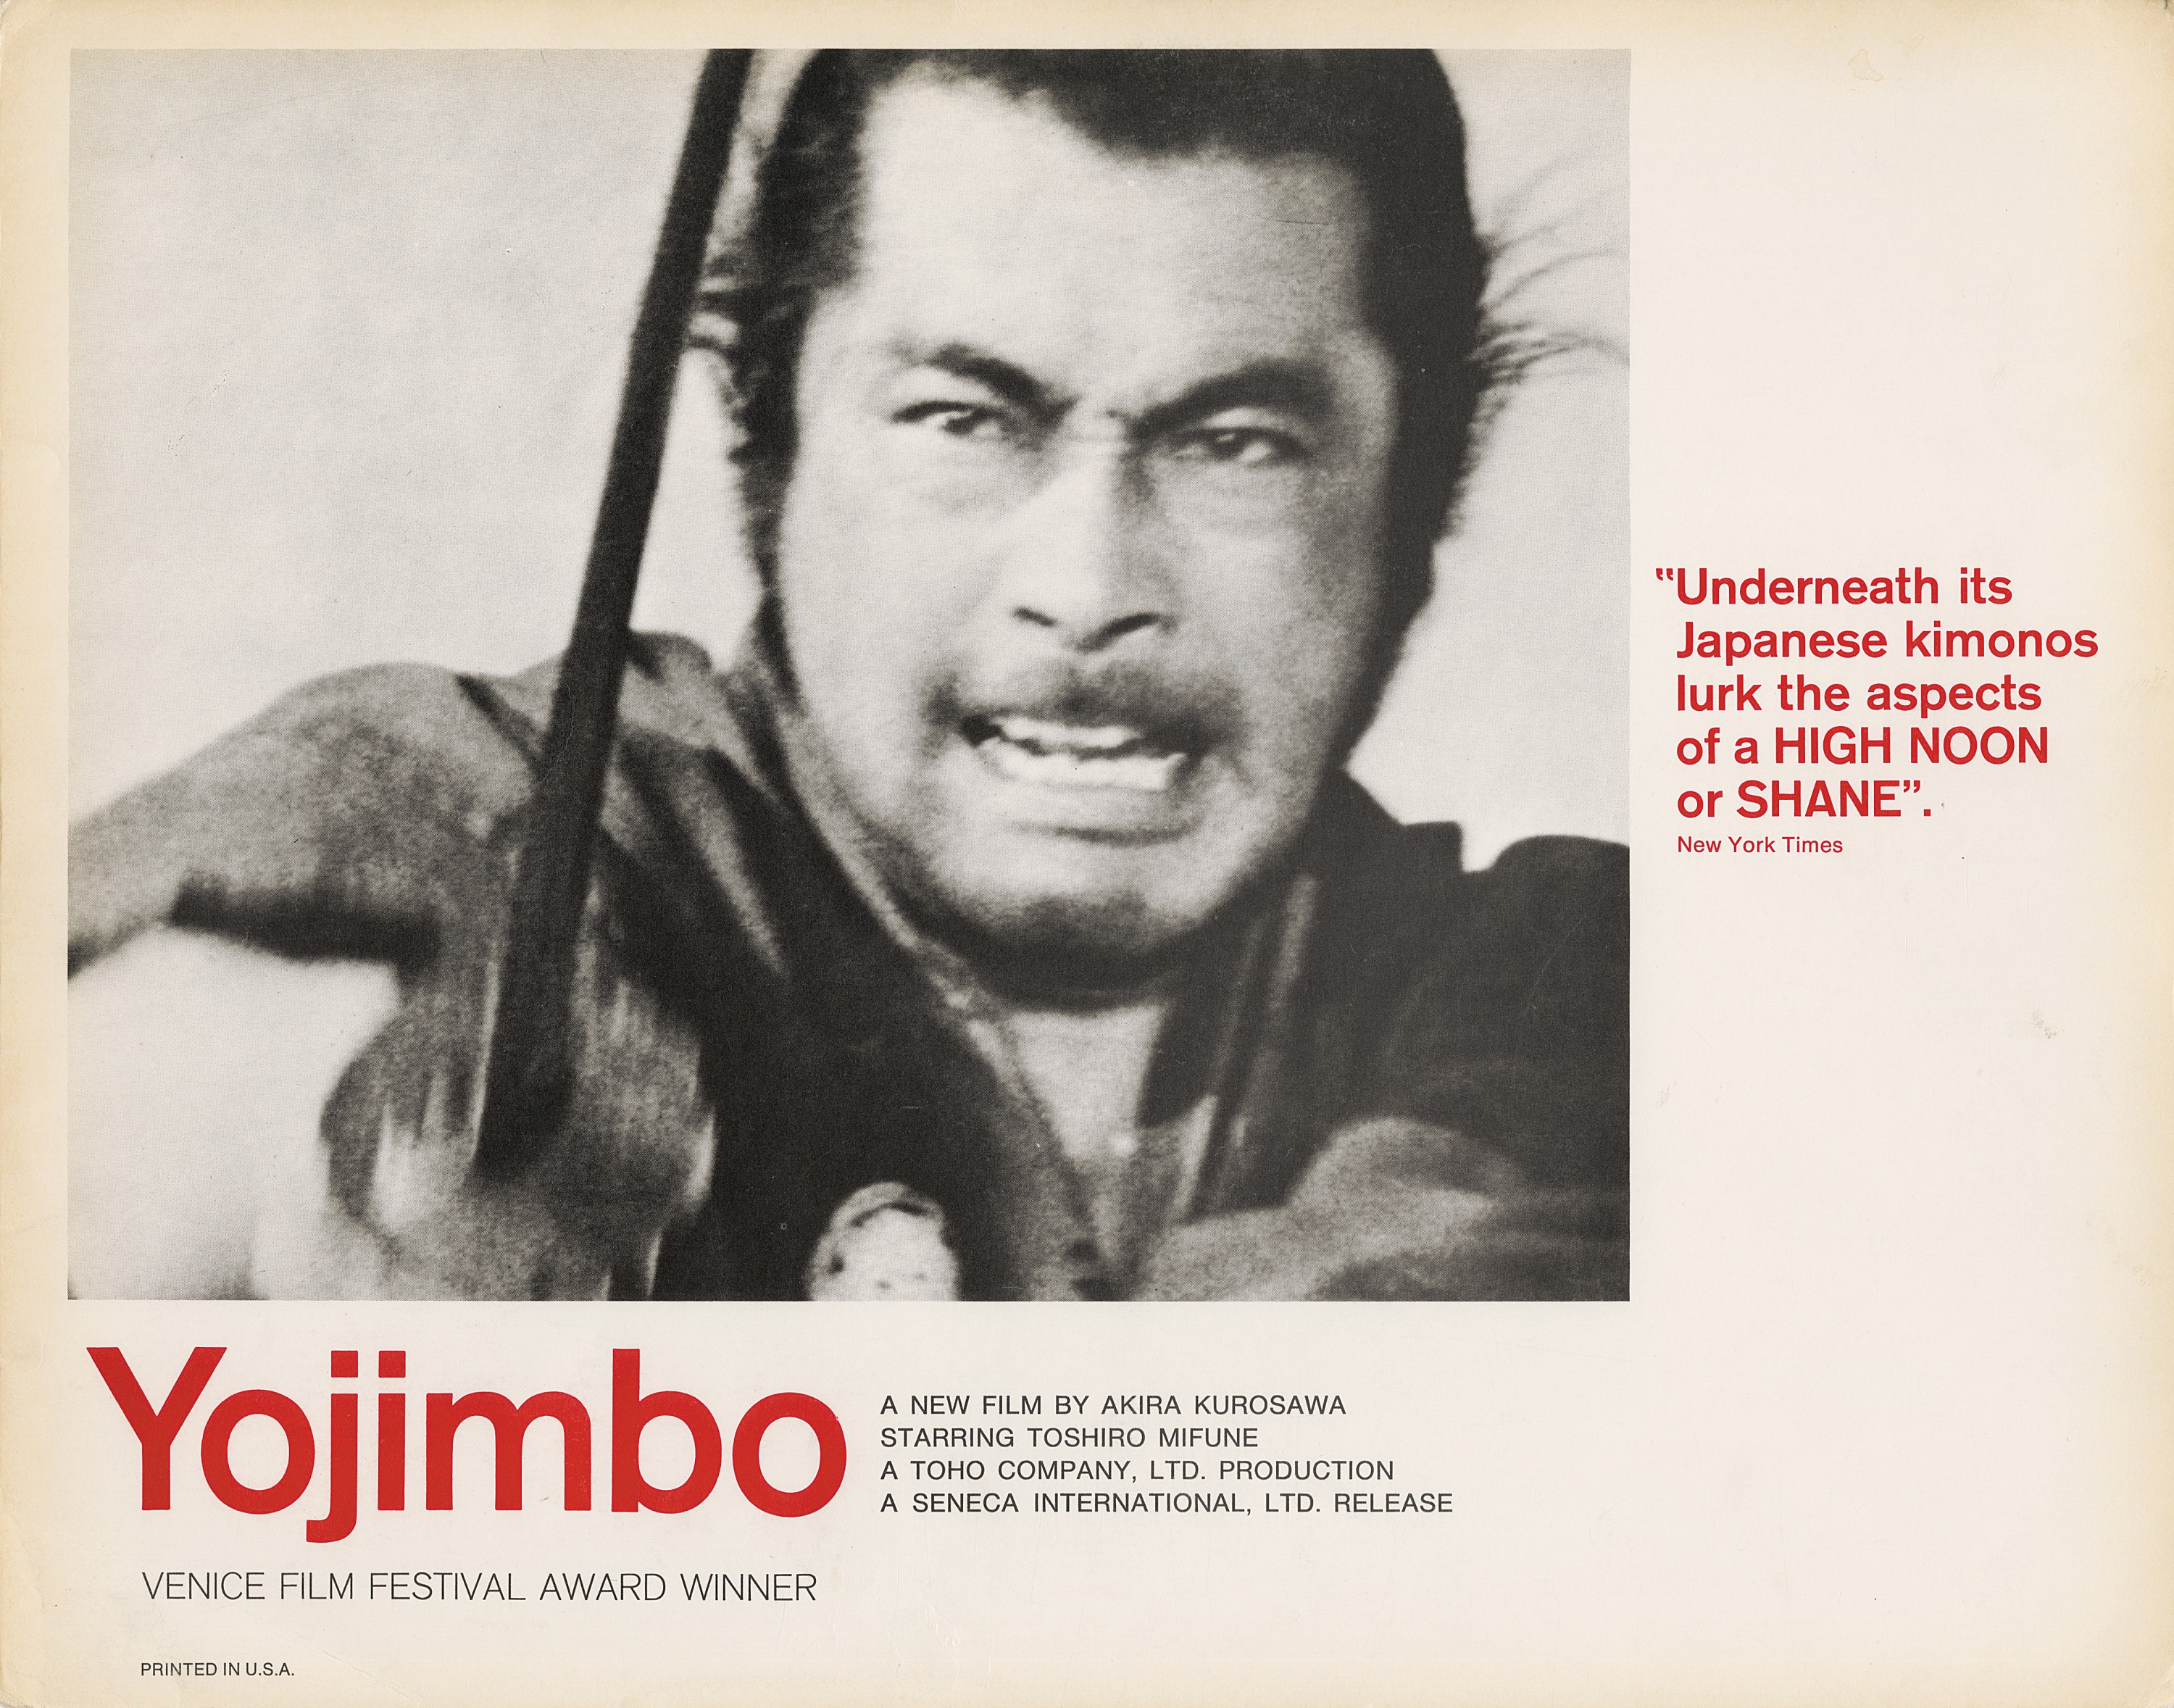 La locandina di "Yojimbo", titolo originale del film di Kurosawa "La sfida del samurai", 1961